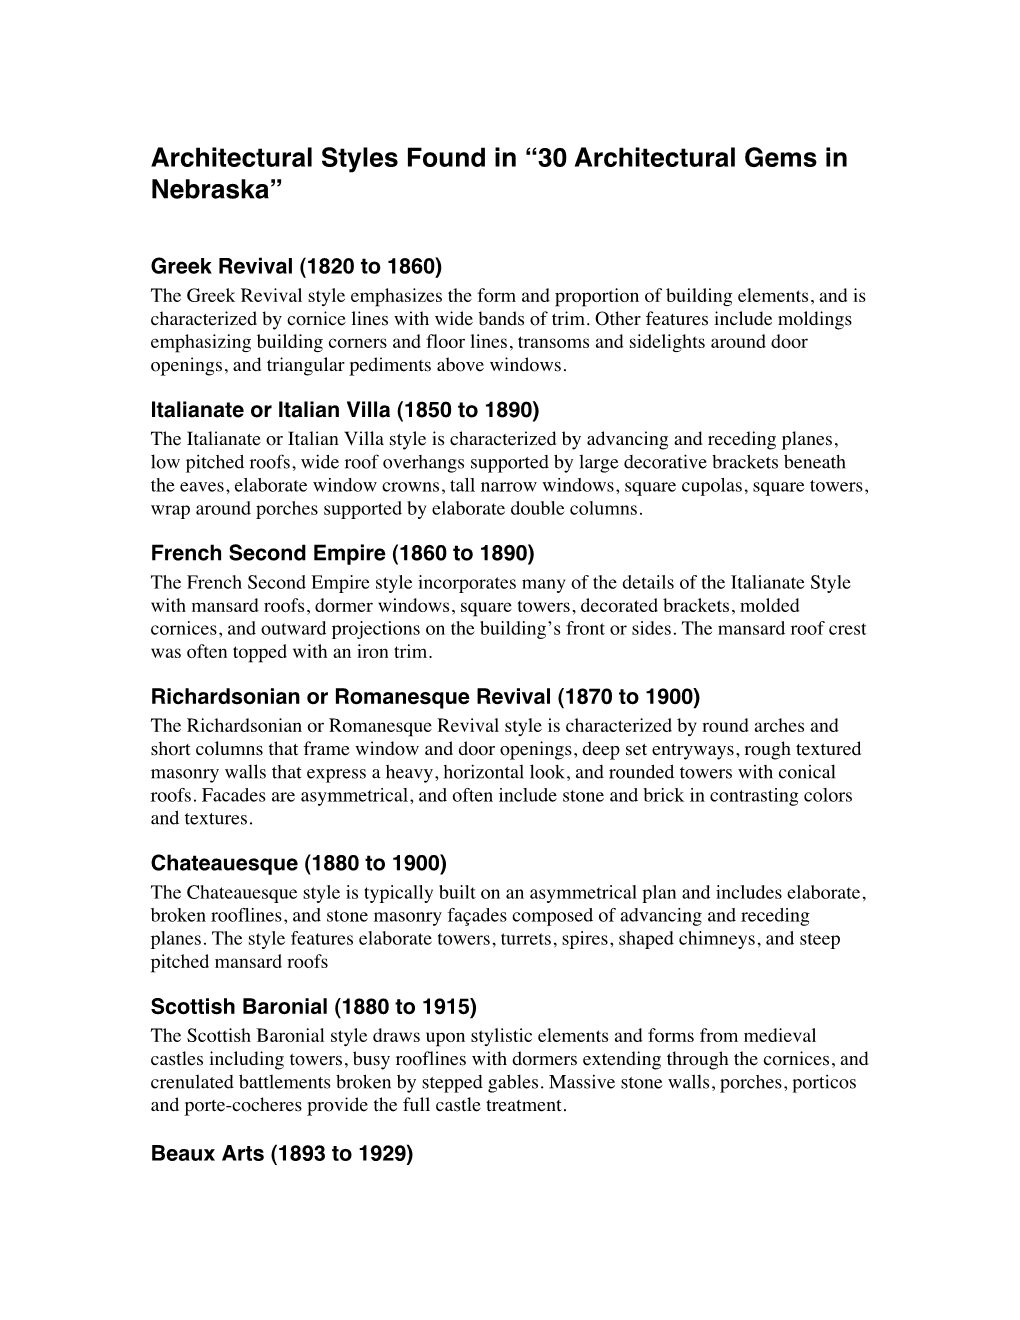 Architectural Styles Found in “30 Architectural Gems in Nebraska”